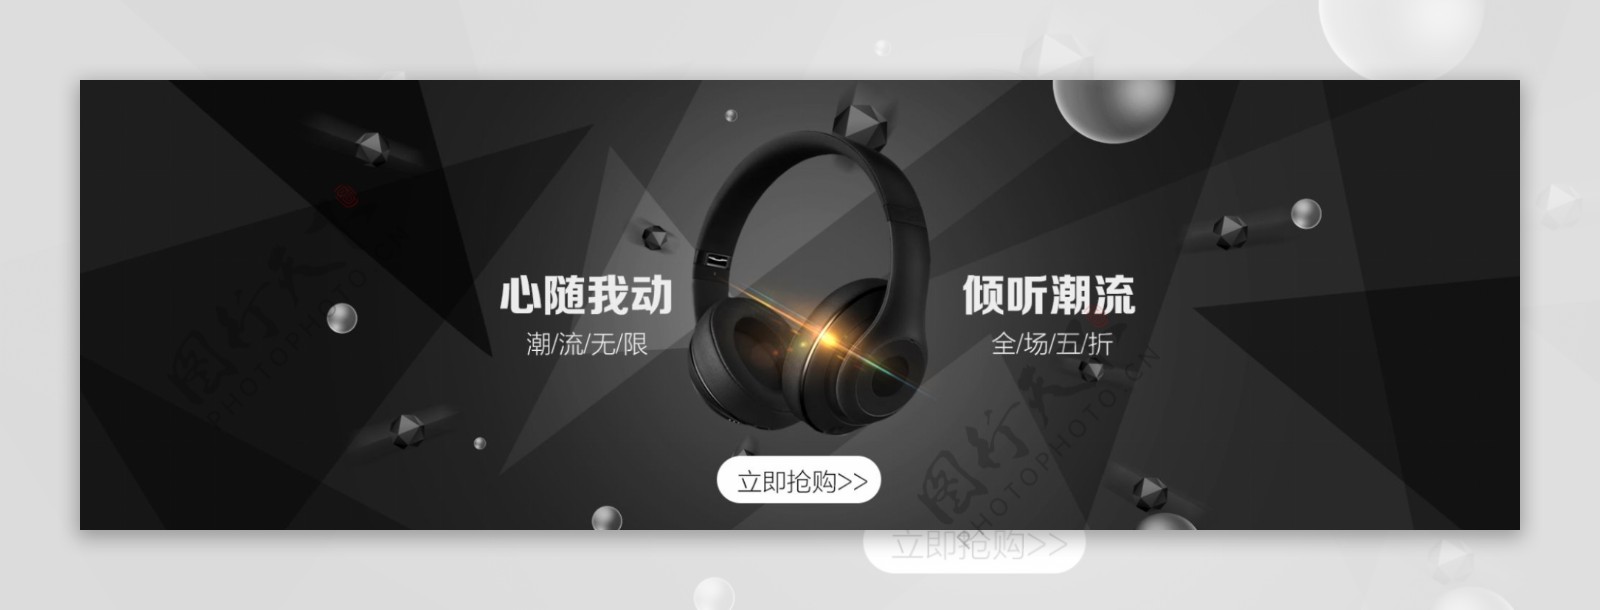 黑色时尚挂耳式耳机促销淘宝banner